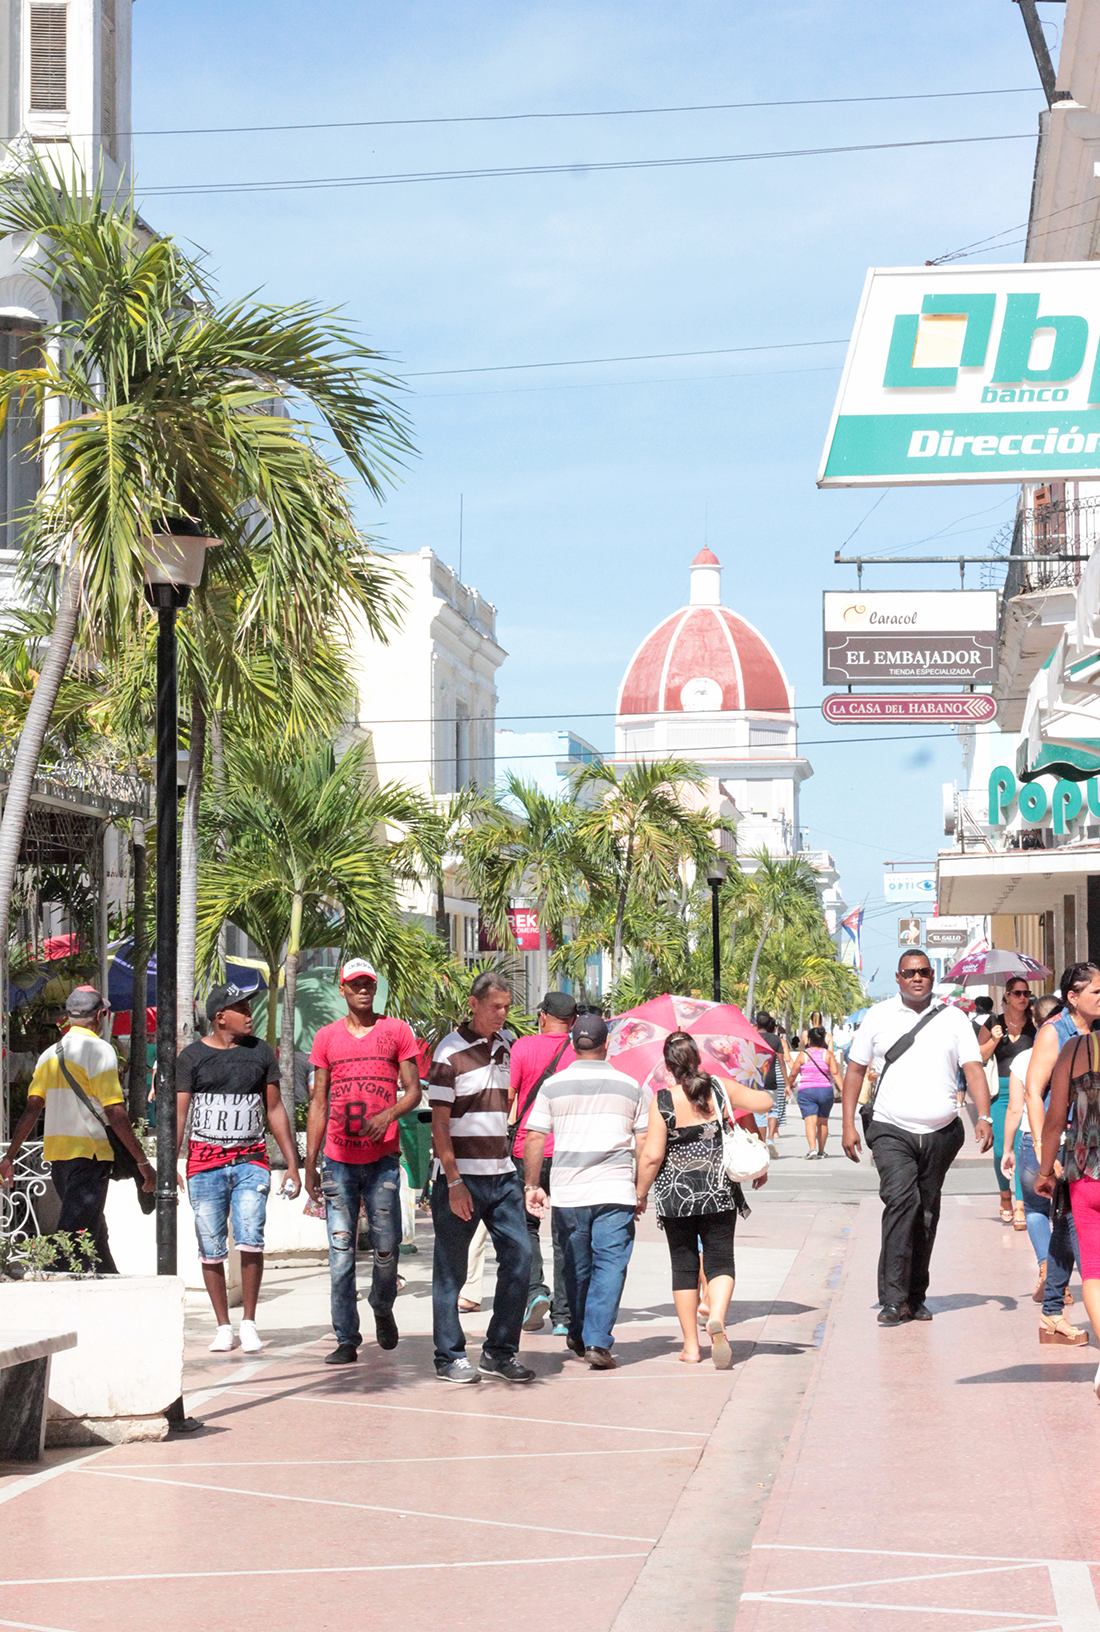 Main shopping street in Cienfuegos, Cuba